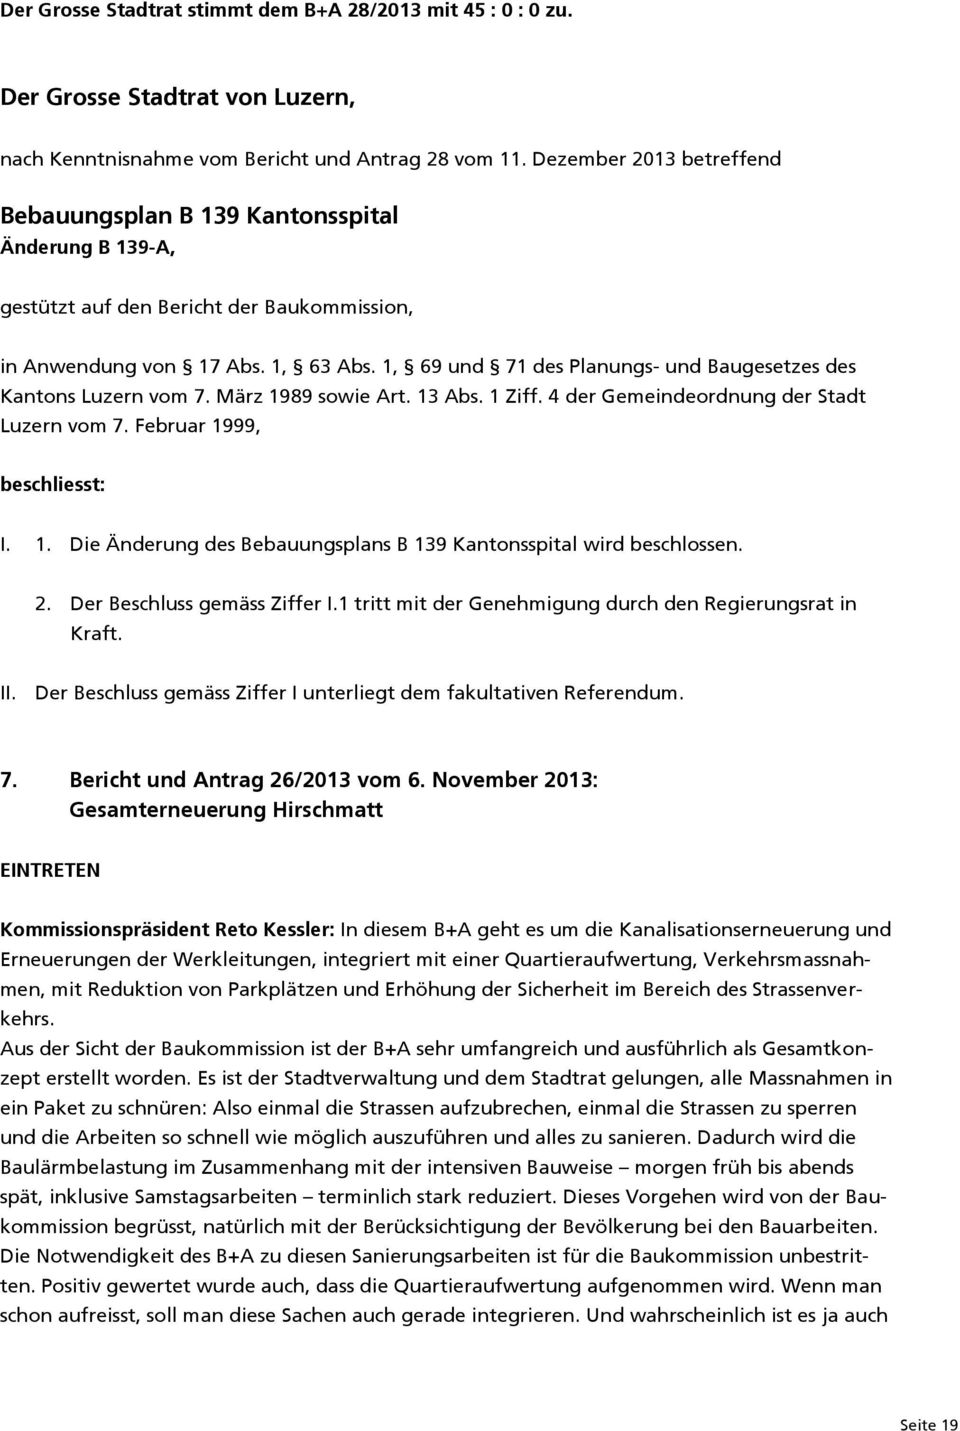 1, 69 und 71 des Planungs- und Baugesetzes des Kantons Luzern vom 7. März 1989 sowie Art. 13 Abs. 1 Ziff. 4 der Gemeindeordnung der Stadt Luzern vom 7. Februar 1999, beschliesst: I. 1. Die Änderung des Bebauungsplans B 139 Kantonsspital wird beschlossen.